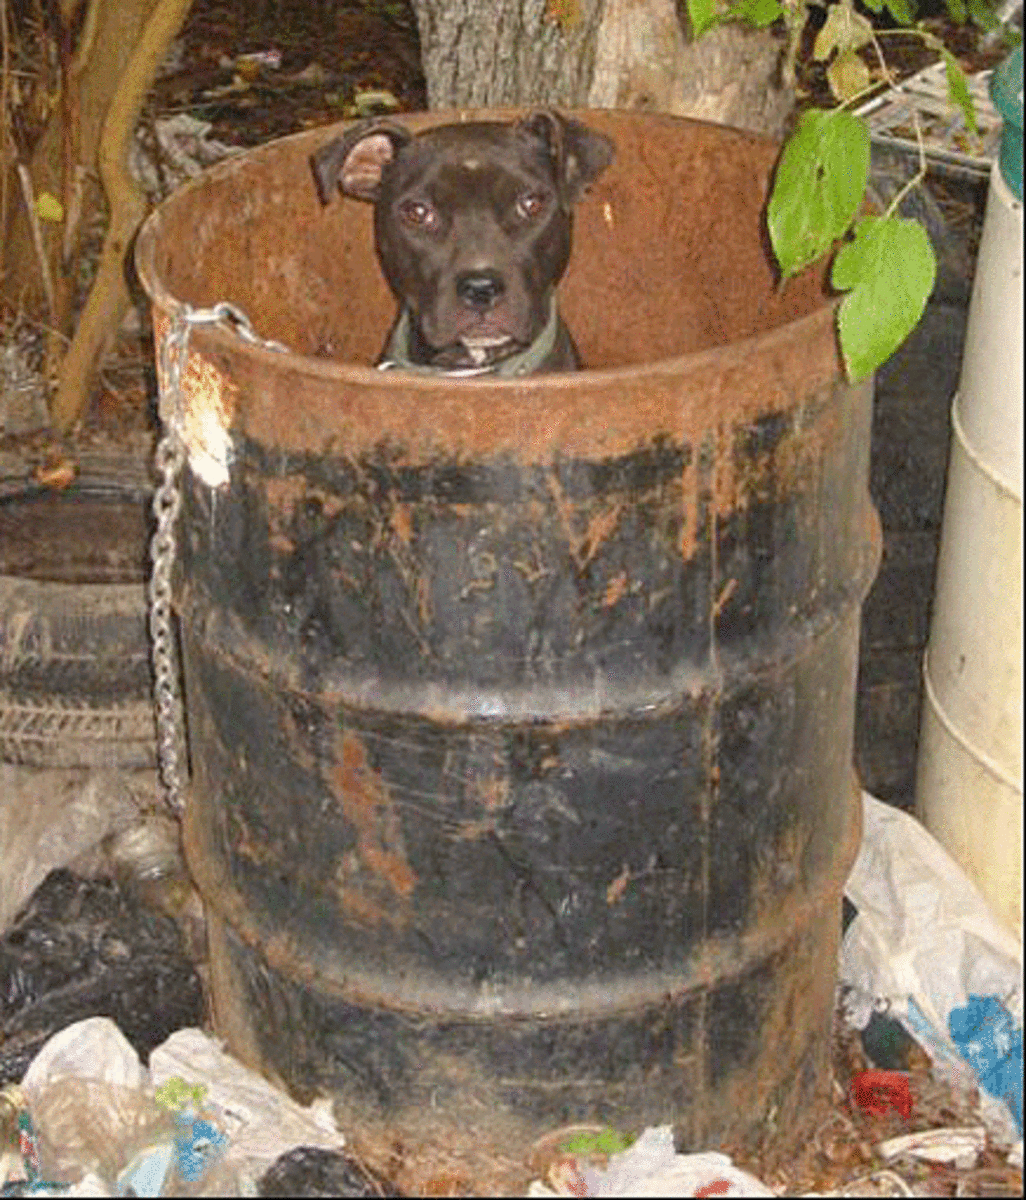 A dog dumpster diving.